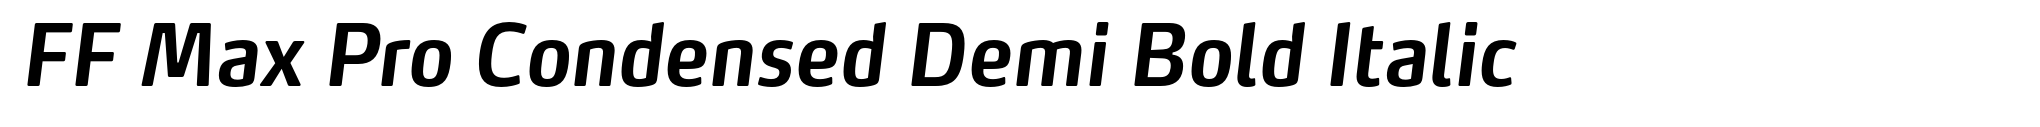 FF Max Pro Condensed Demi Bold Italic image